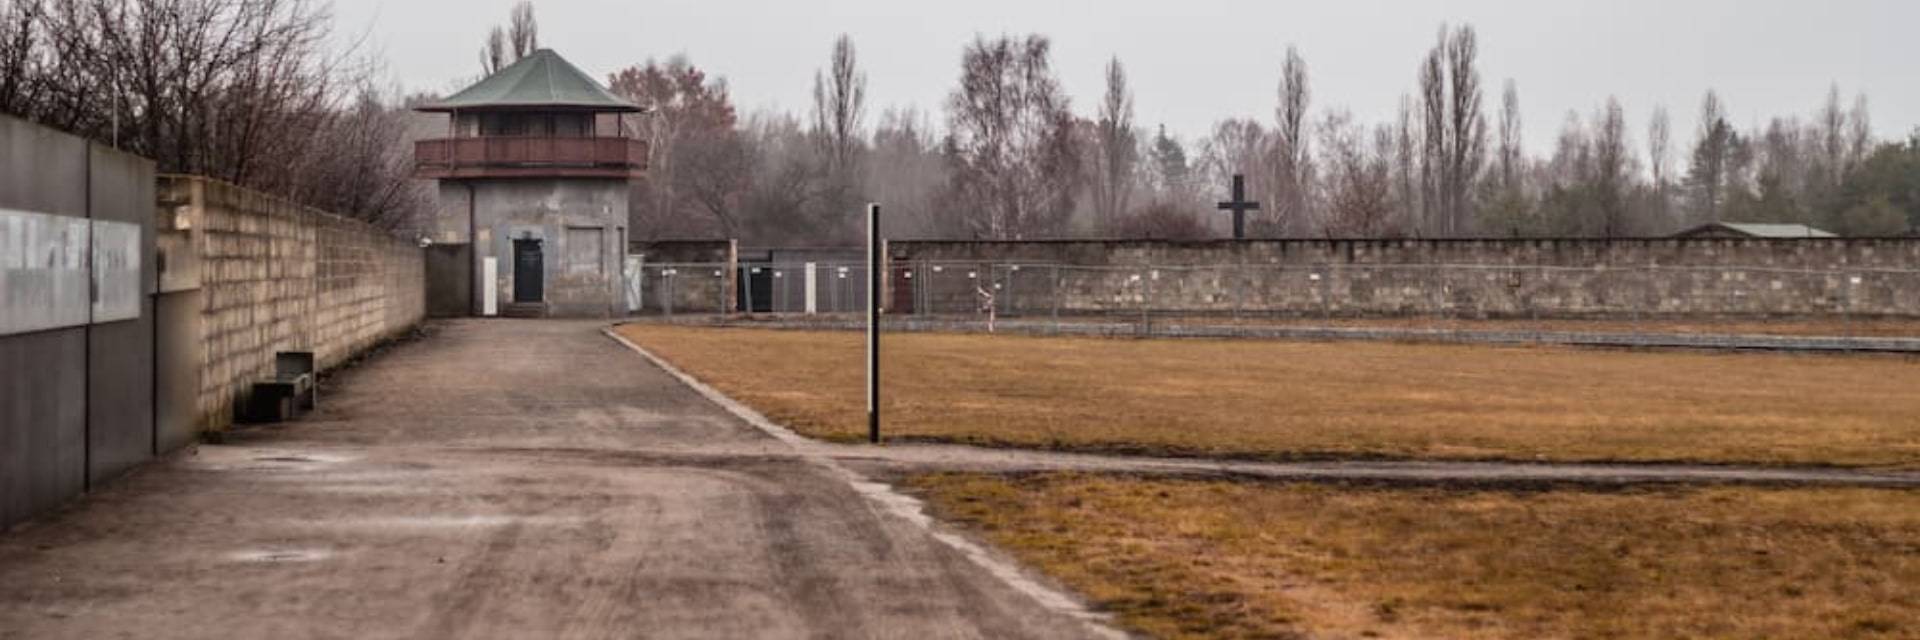 Free Tour del Campo de Concentración de Sachsenhausen